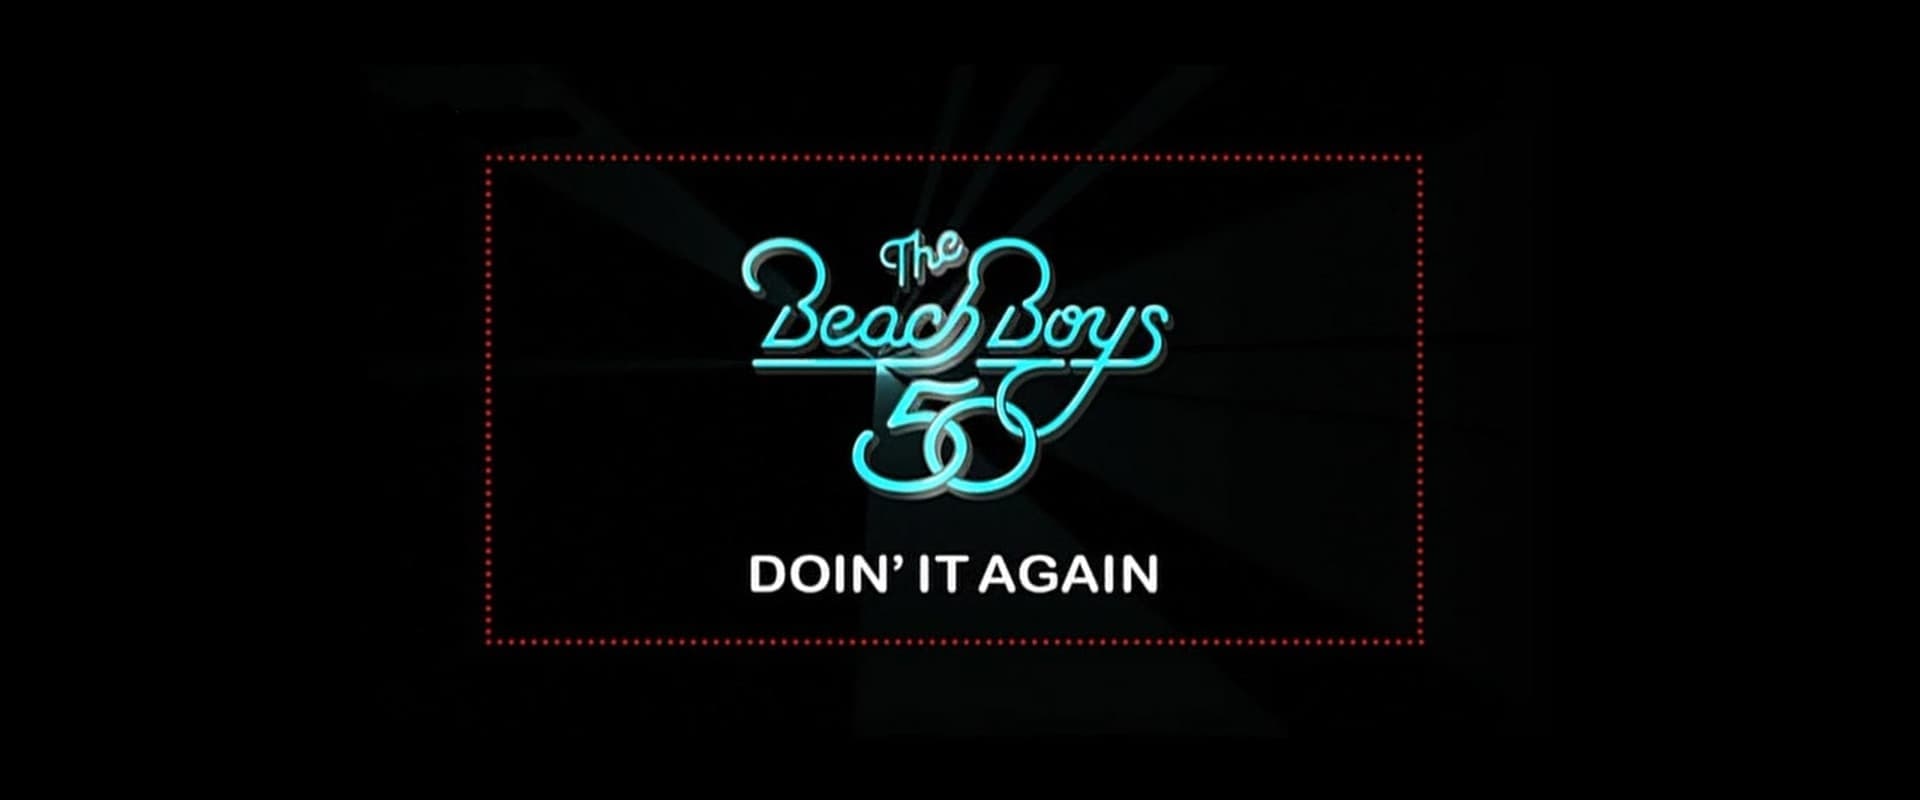 The Beach Boys: Doin' It Again